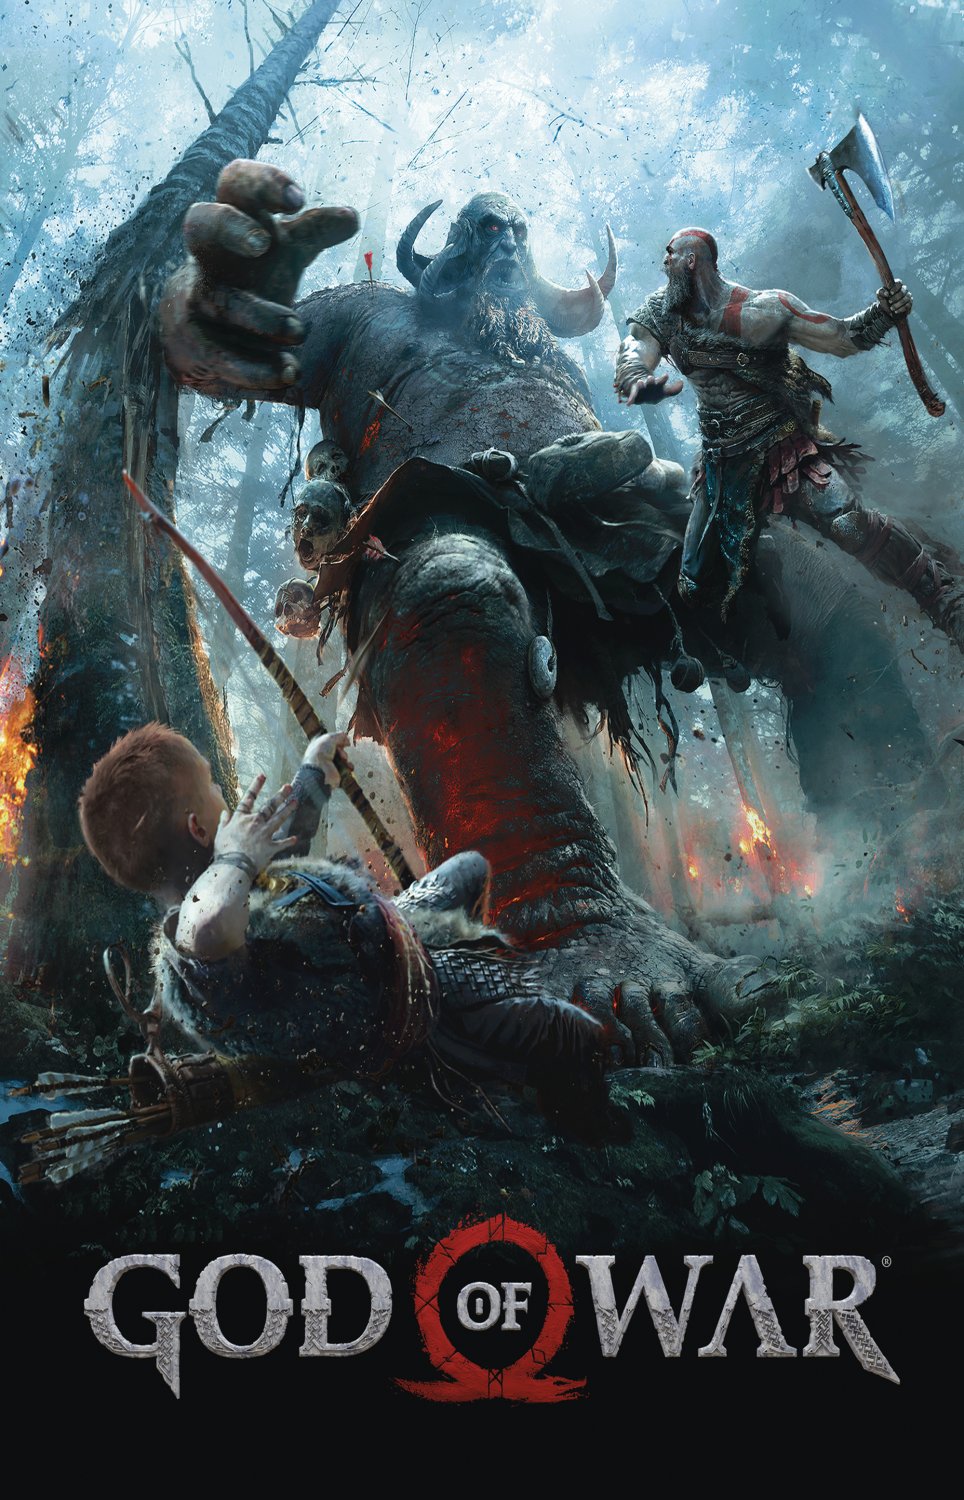 God of War Kratos and Atreus  13"x19" (32cm/49cm) Polyester Fabric Poster